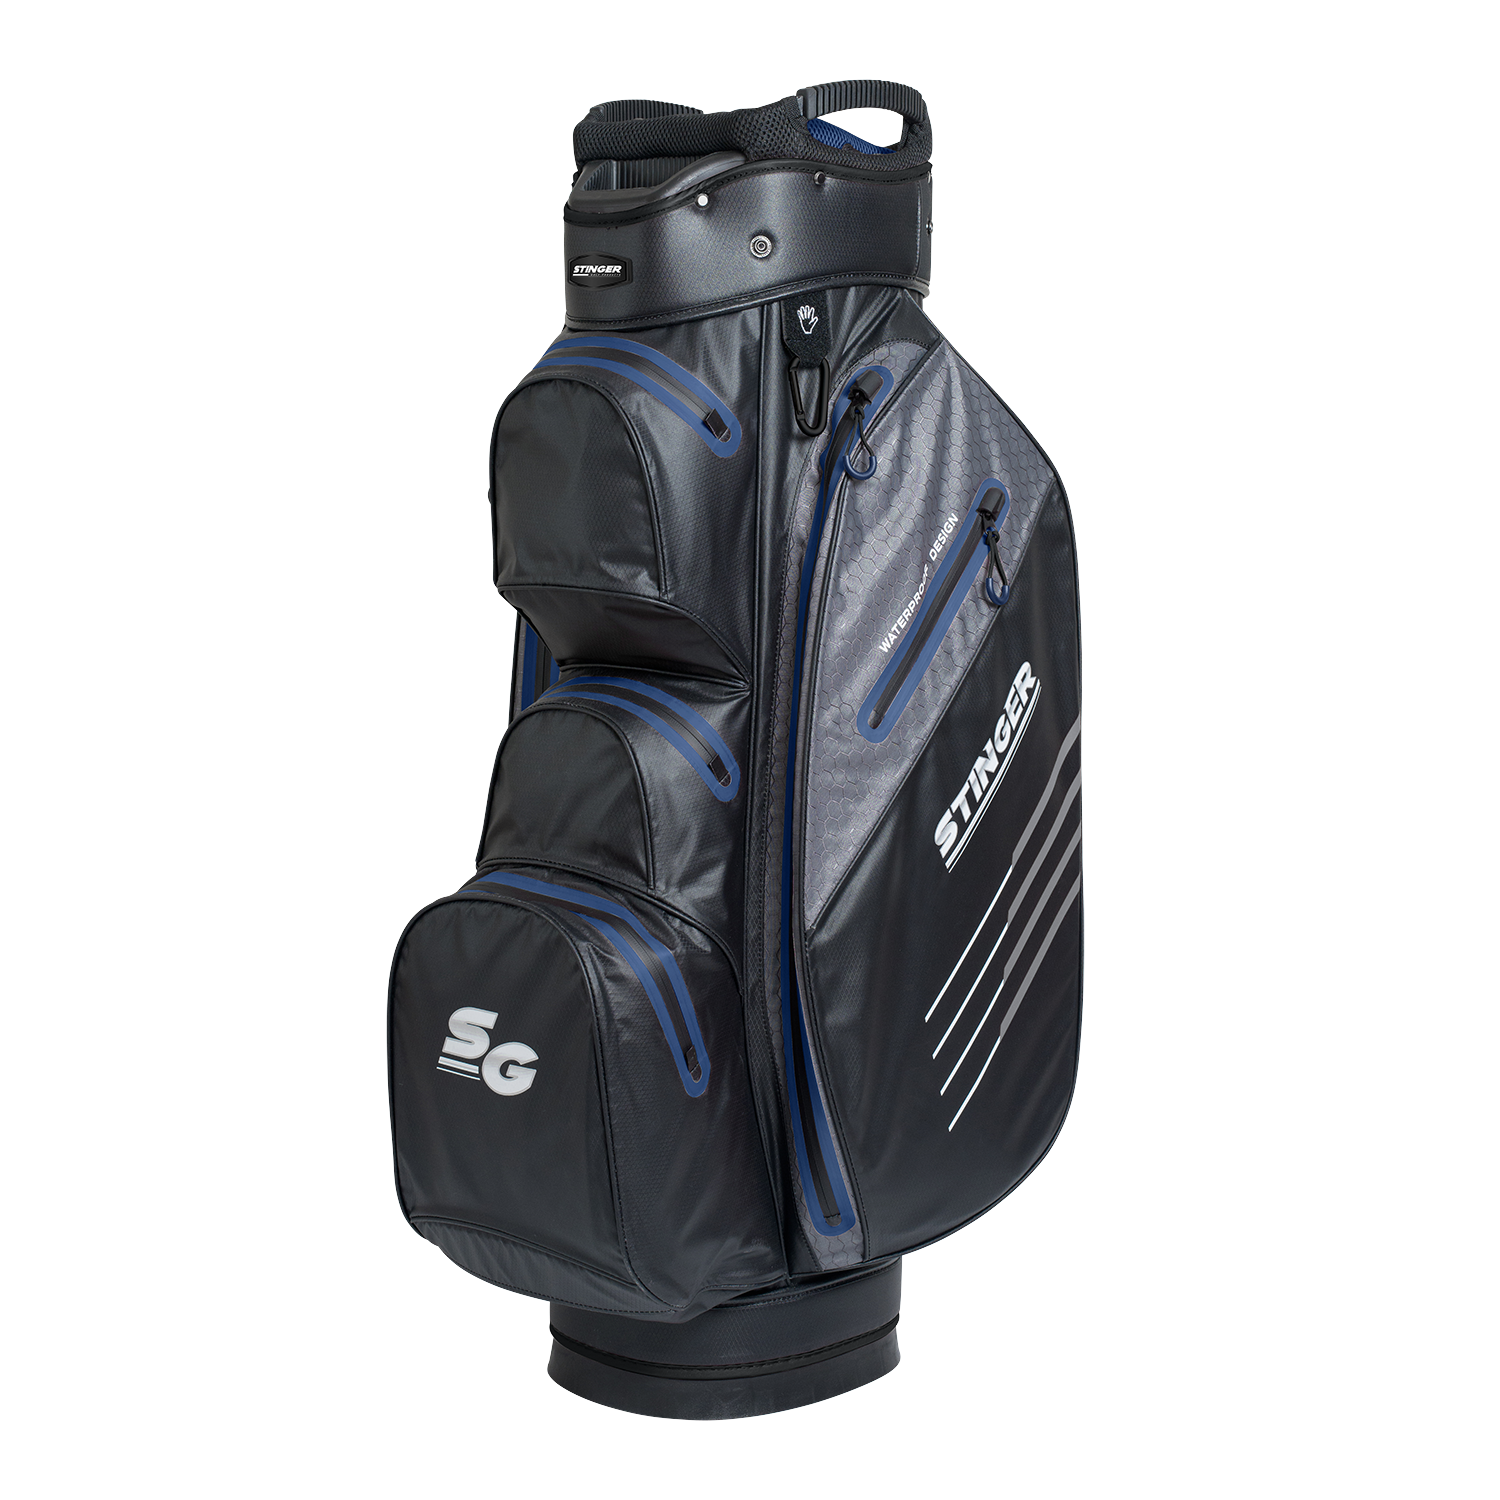 Stinger Waterproof Golf Bag - Black/Navy